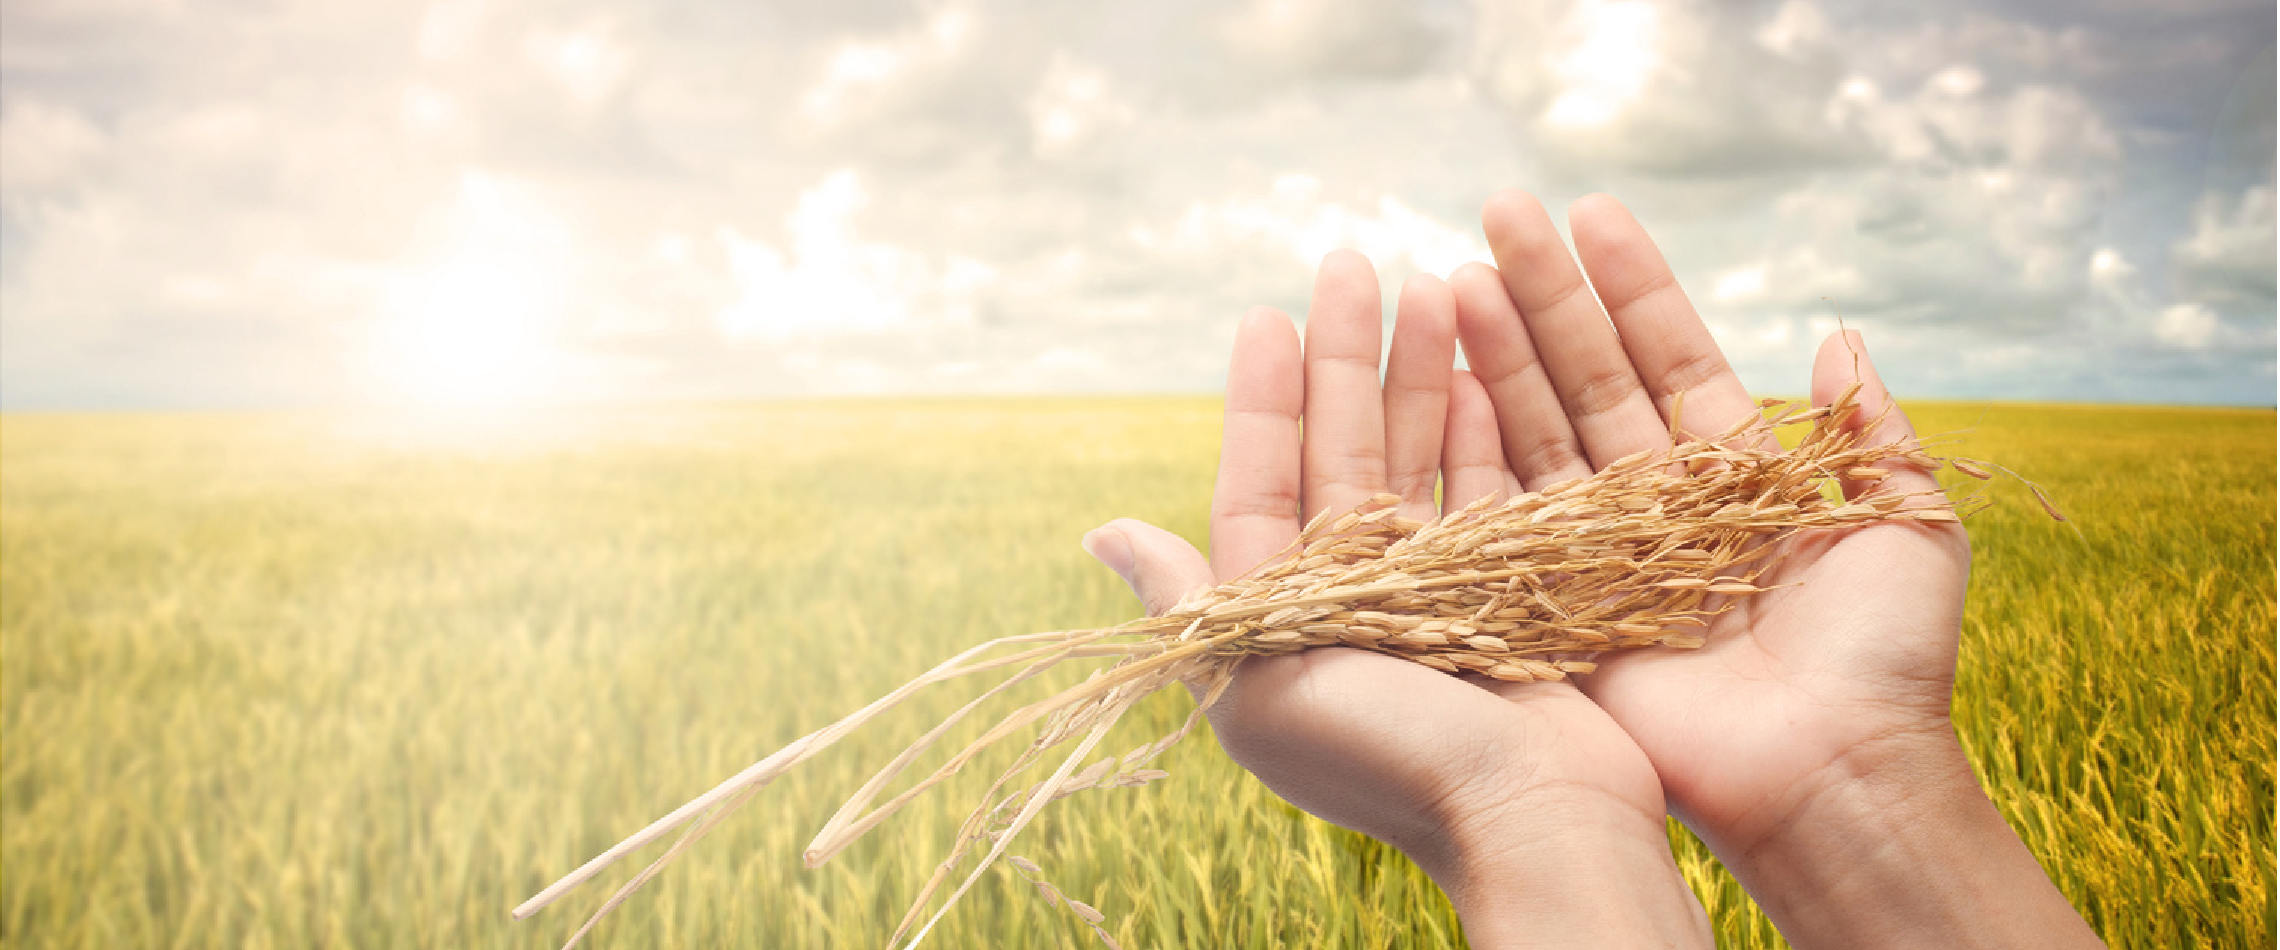 Посеявший зерно самоклеящаяся. Пшеница в руках. Женщина пшеница. Человек сеет зерно. Зеленая пшеница в руке.